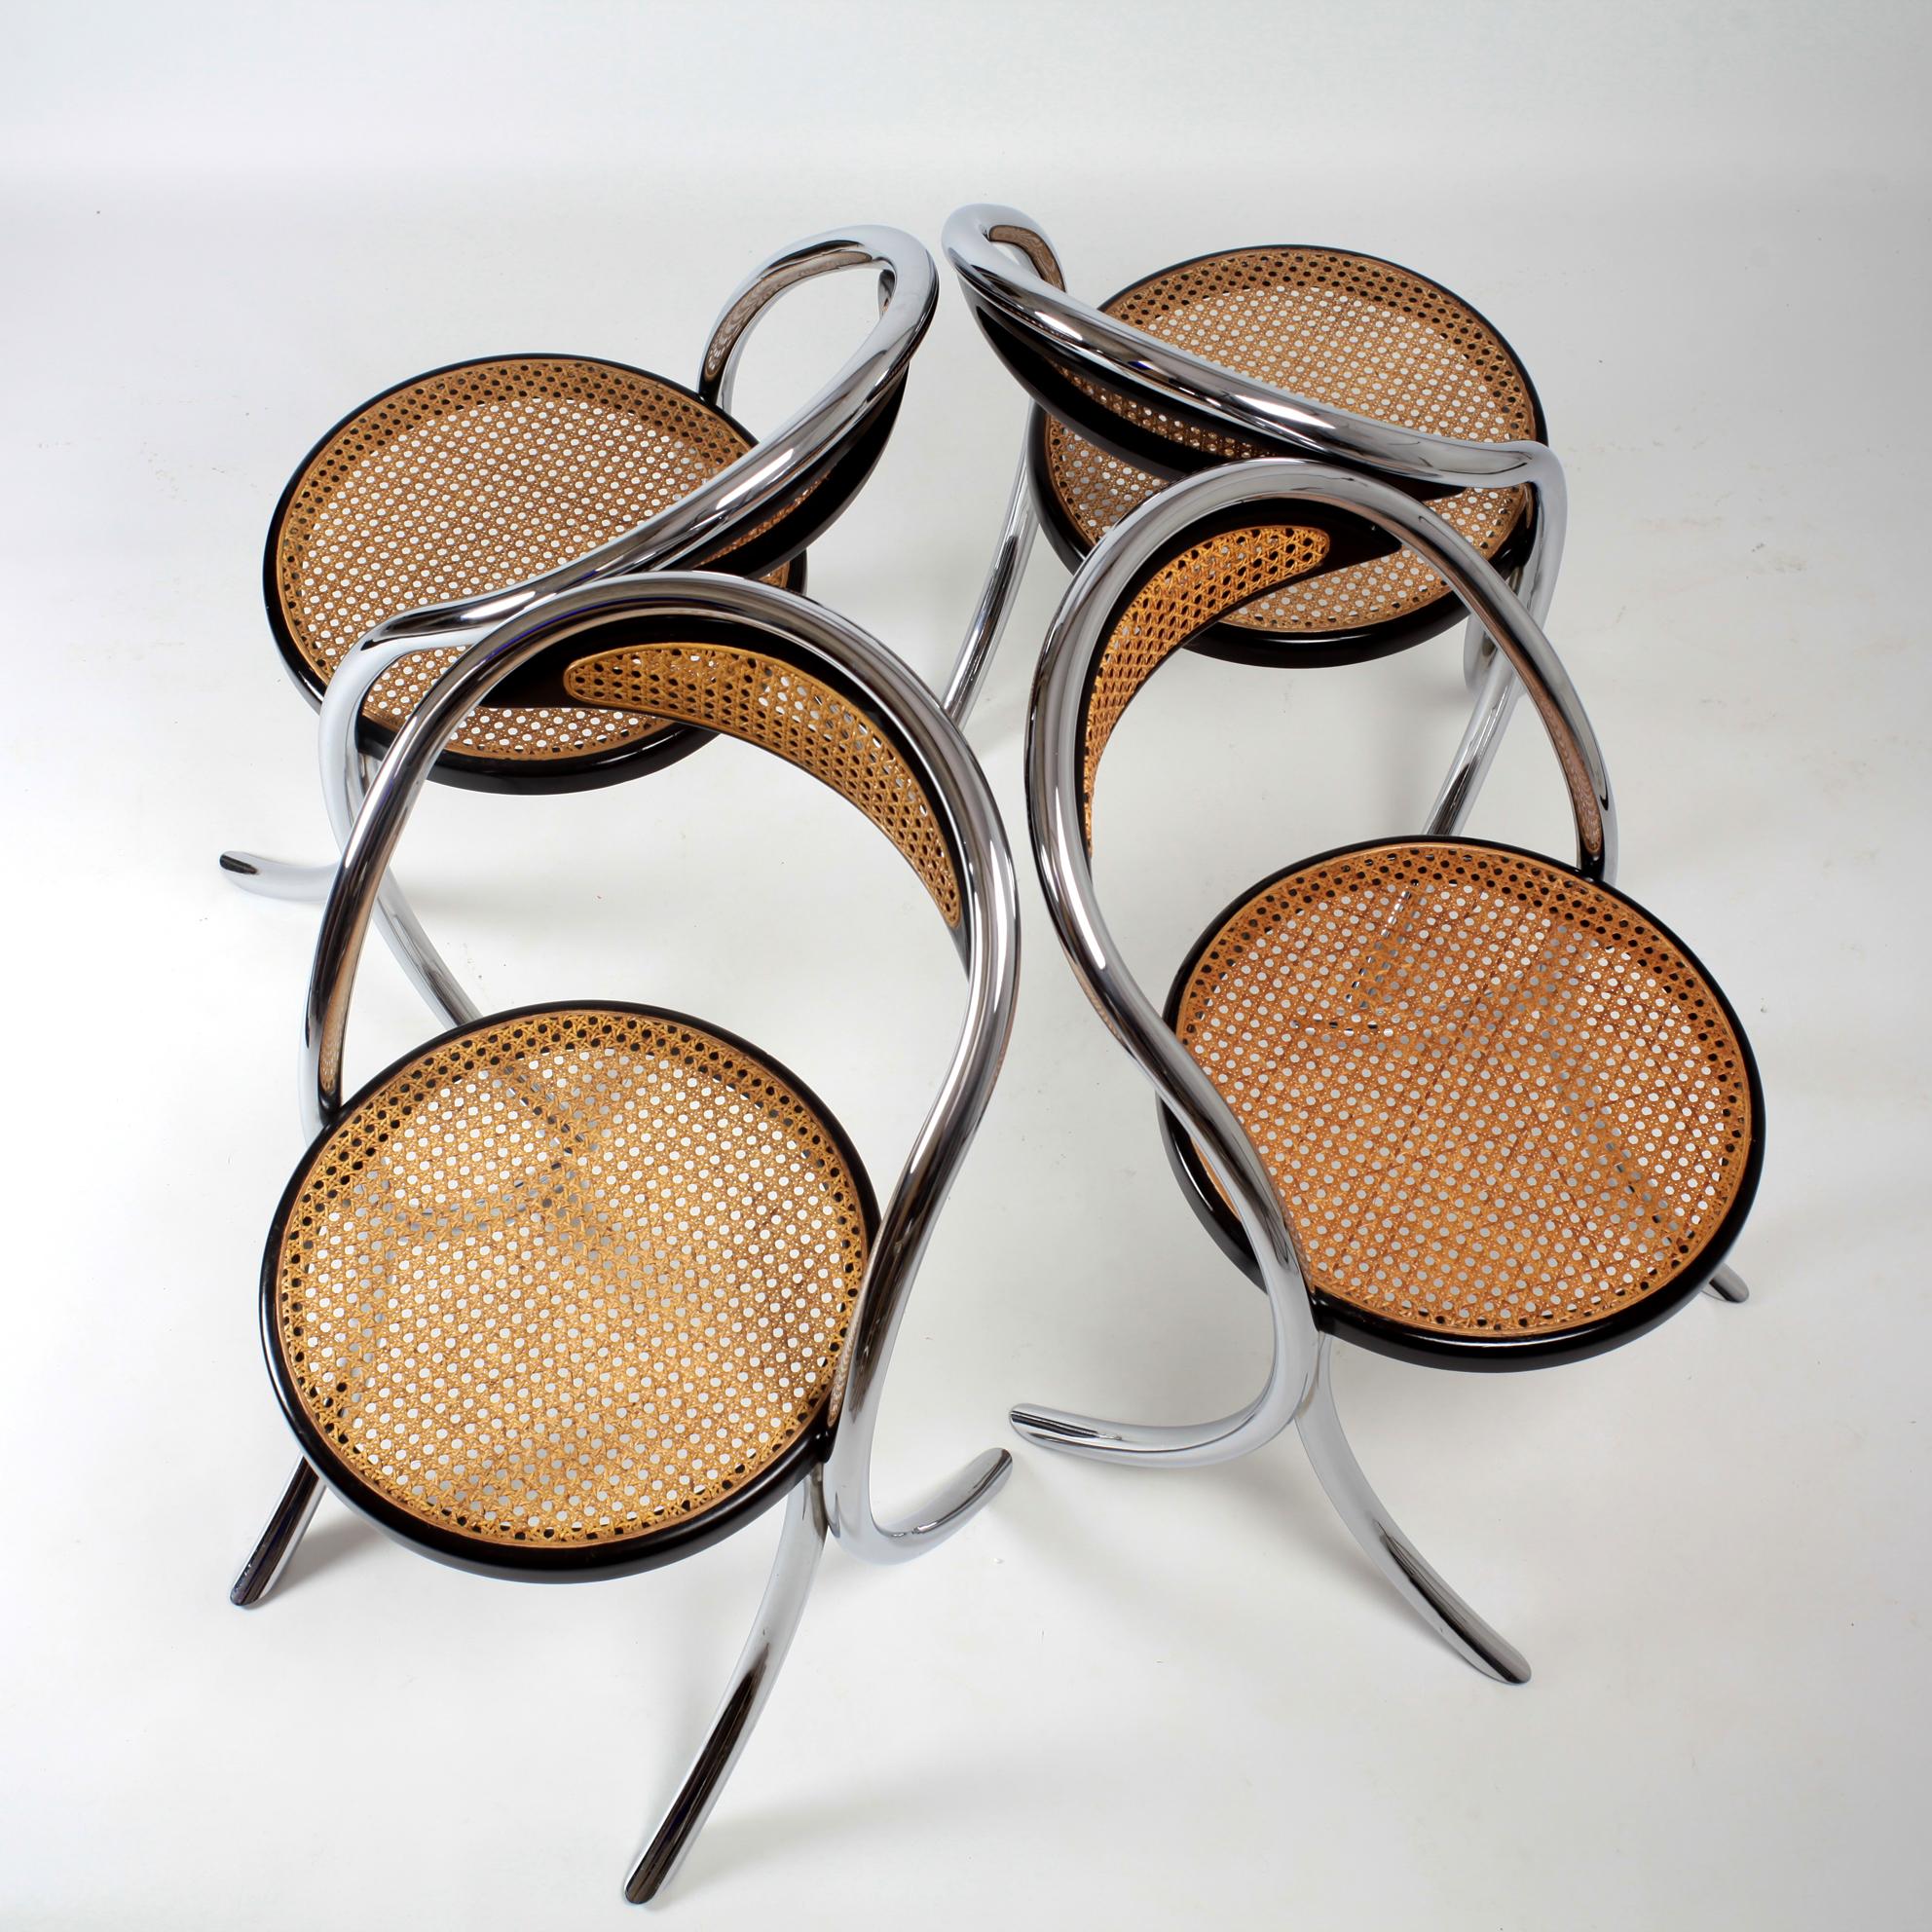 Rare et originale chaise italienne de forme incurvée des années 1970 avec assise et dossier en bois et canne laqués noir et structure chromée. Minimaliste et solide. Très bon état vintage.